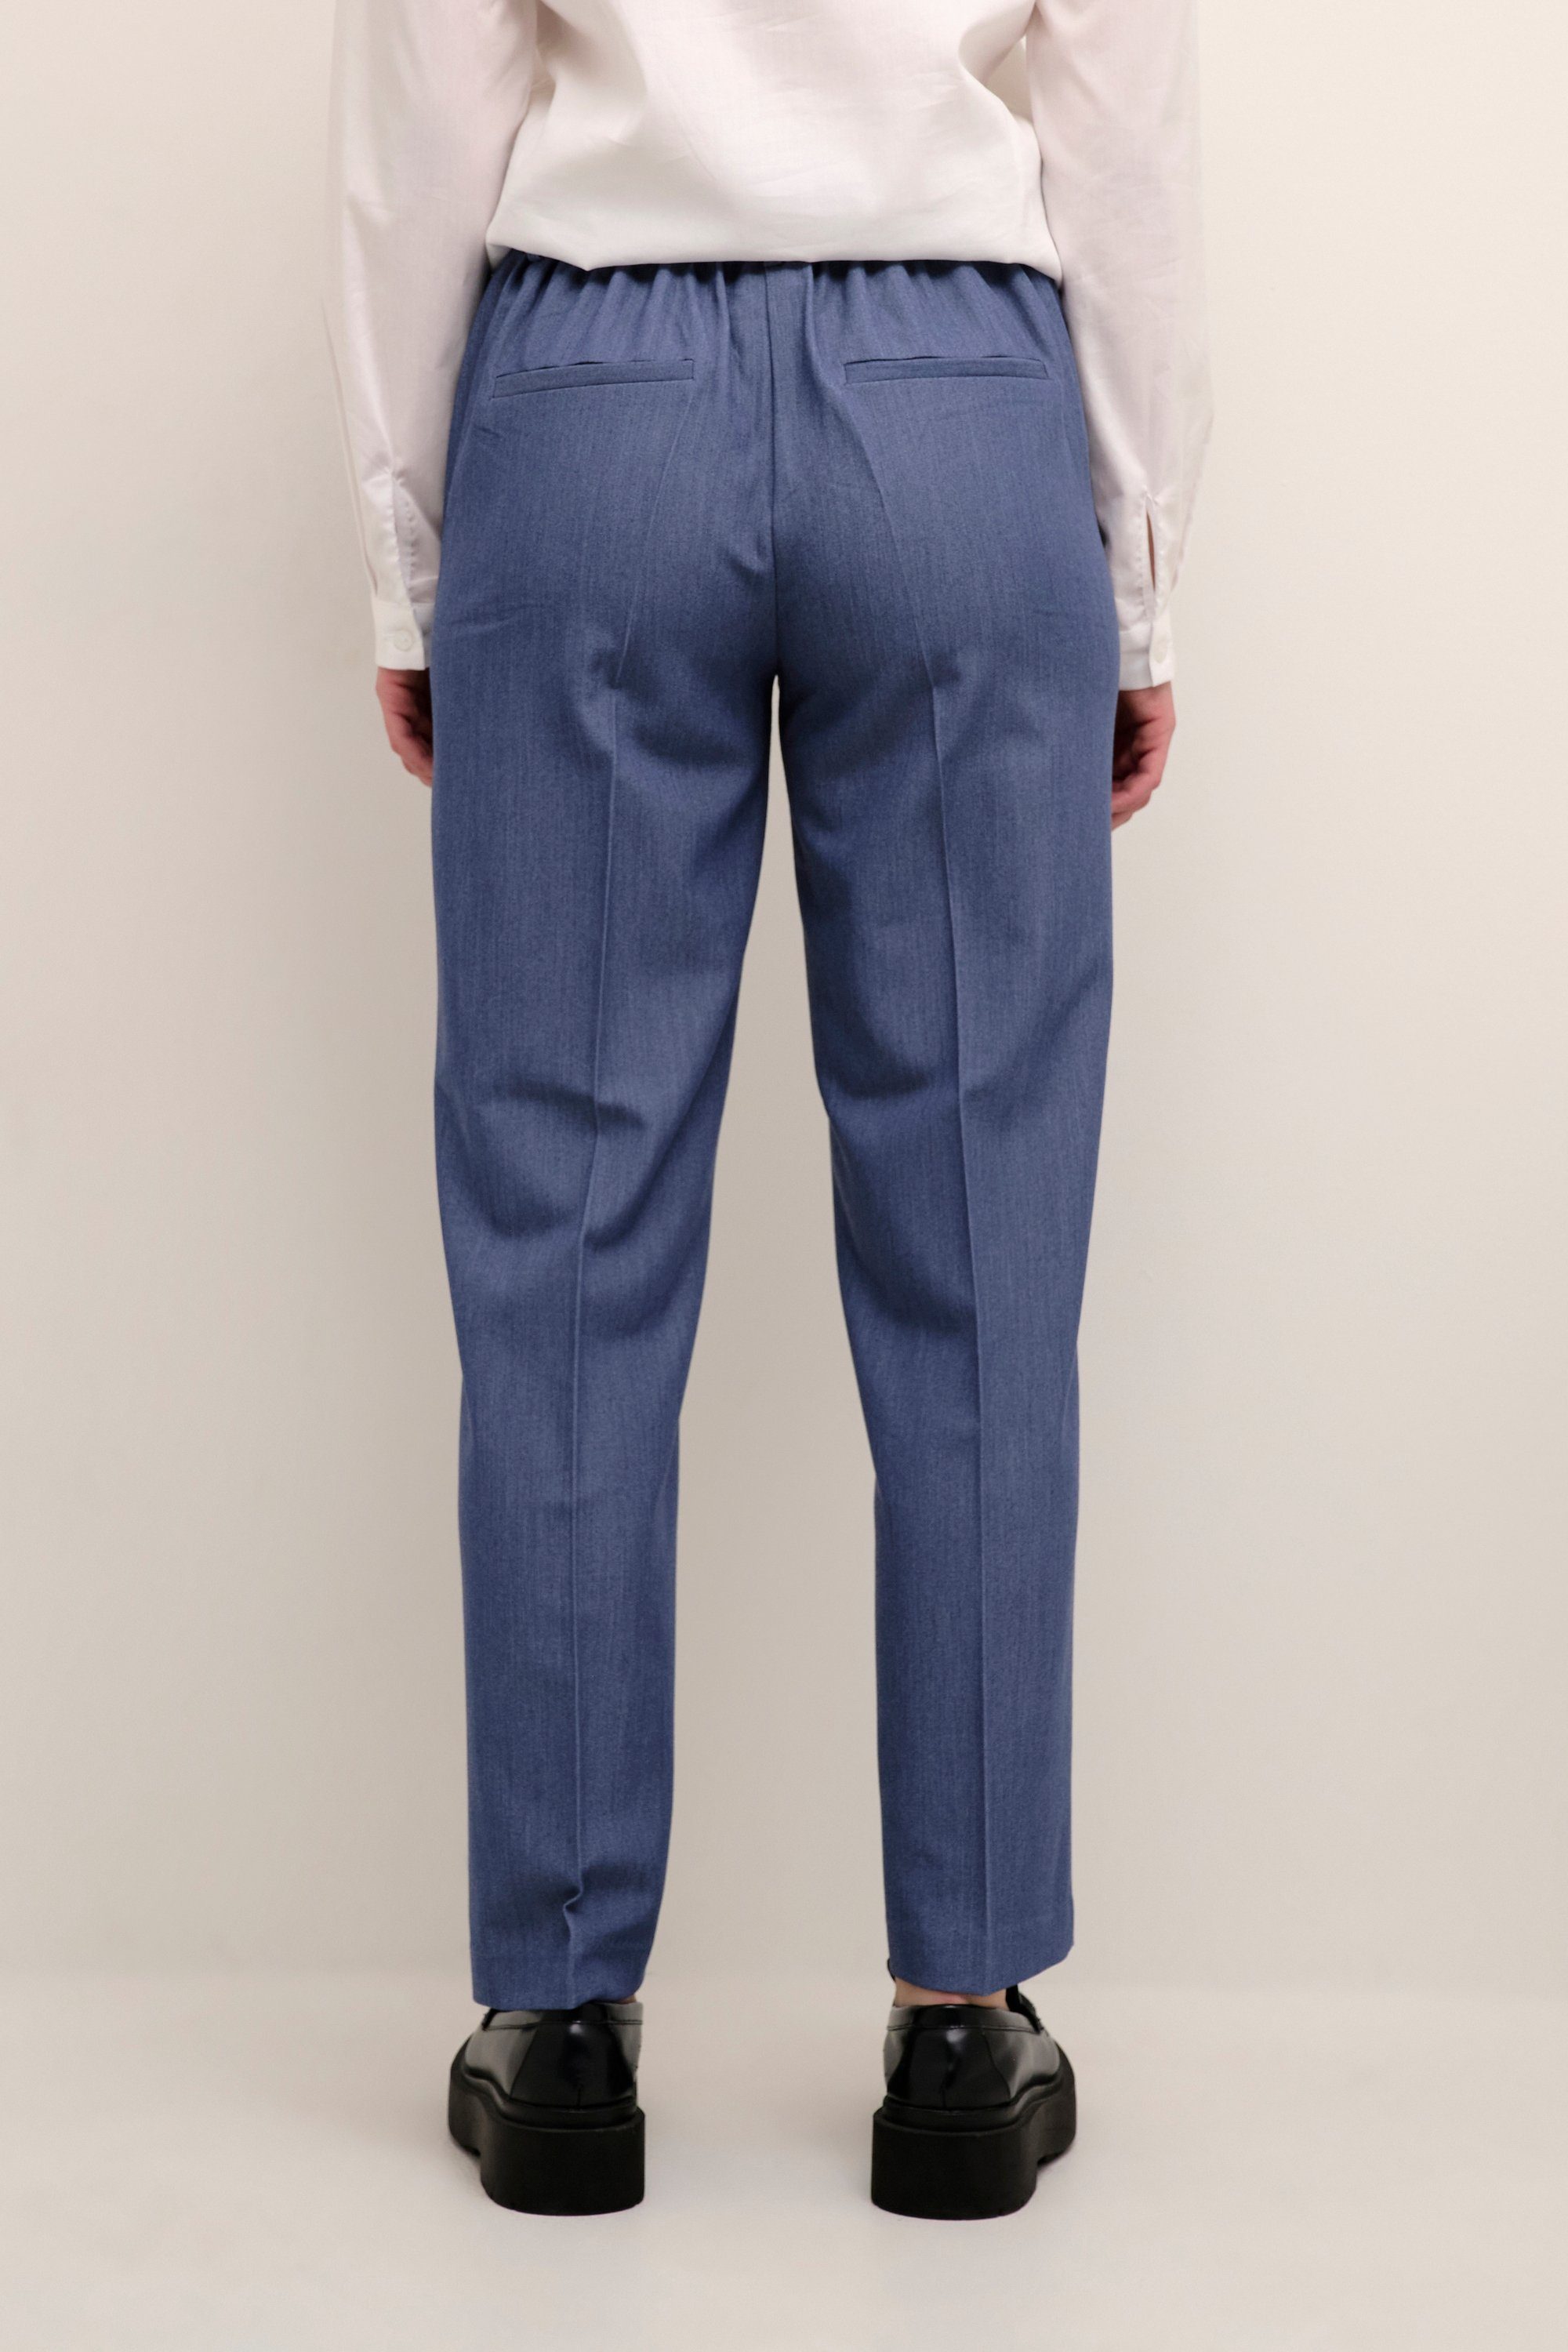 KAFFE Vintage Pants Indigo KAsakura Anzughose Suiting